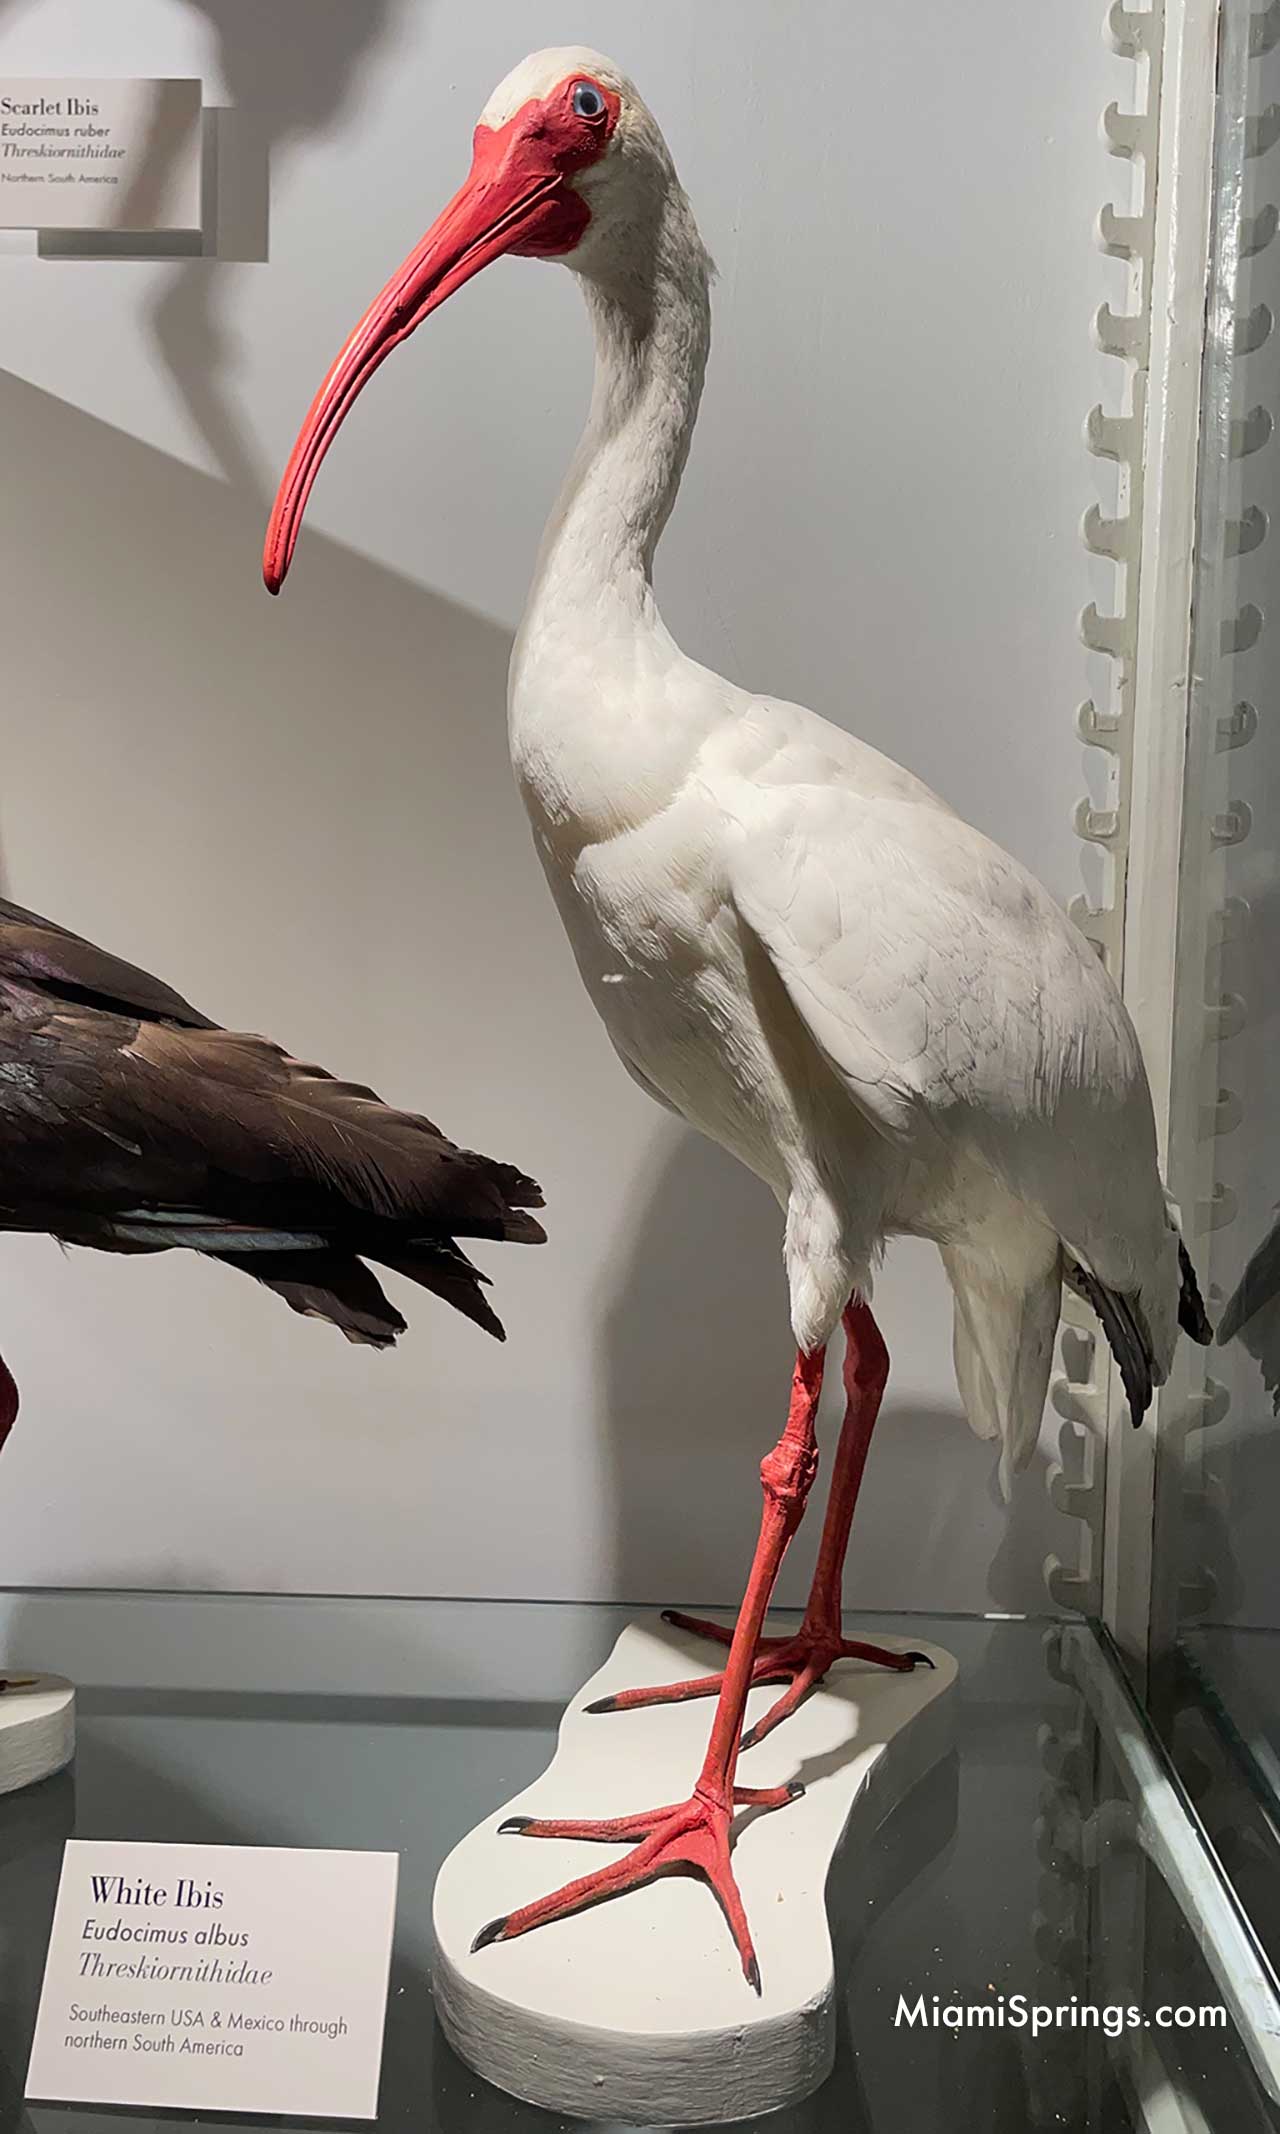 Ibis displayed at the Harvard Museum of Natural History